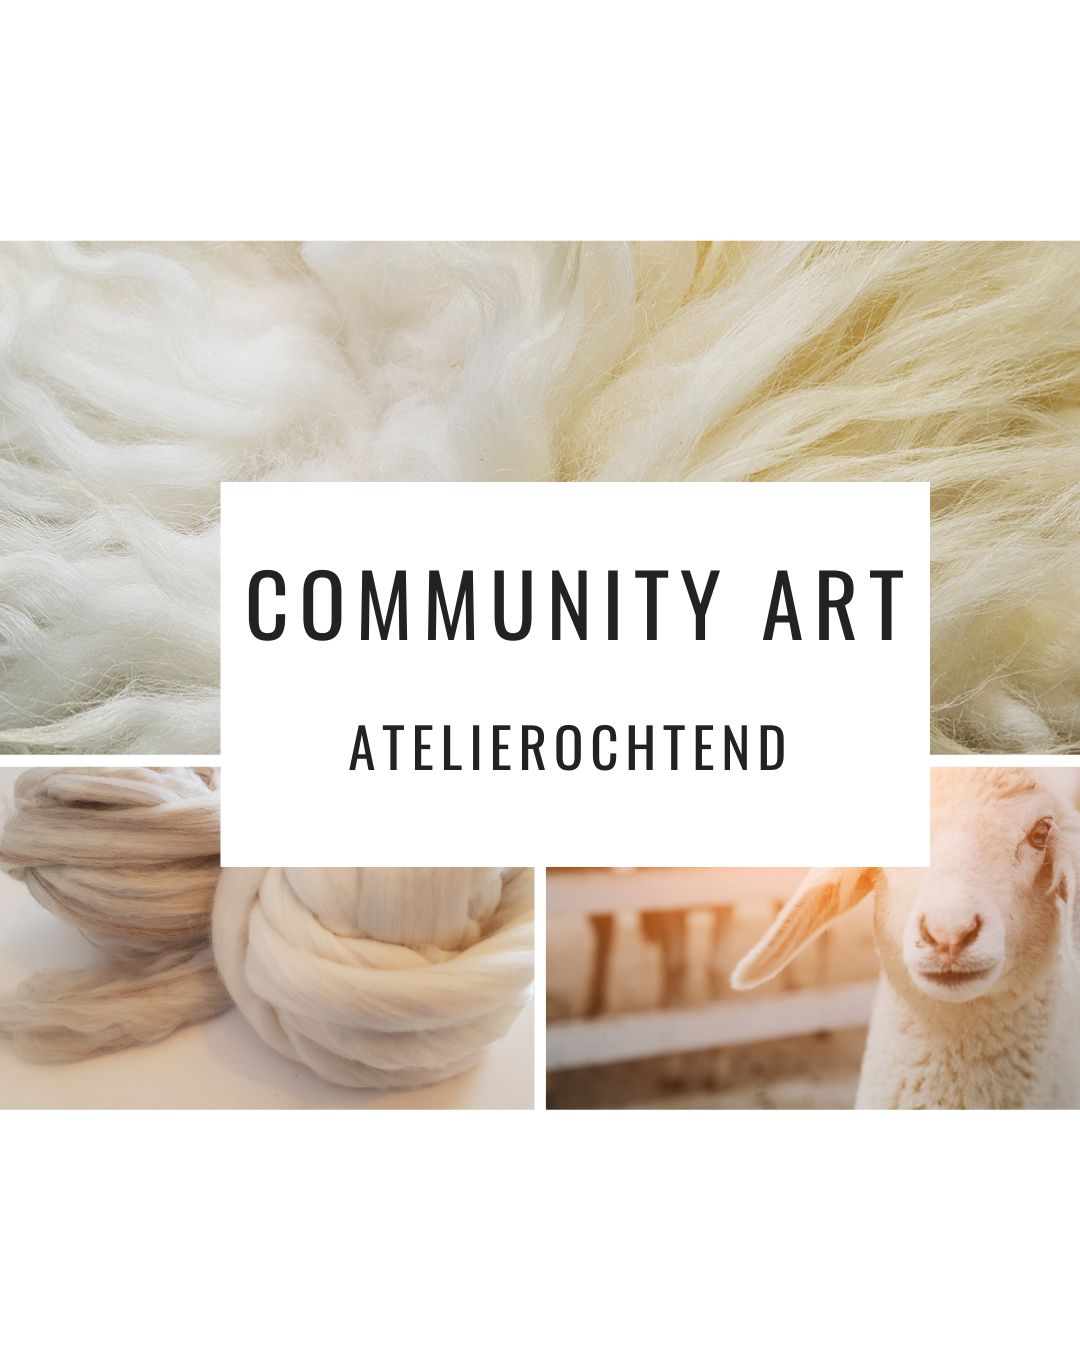 Atelierochtend - Community art